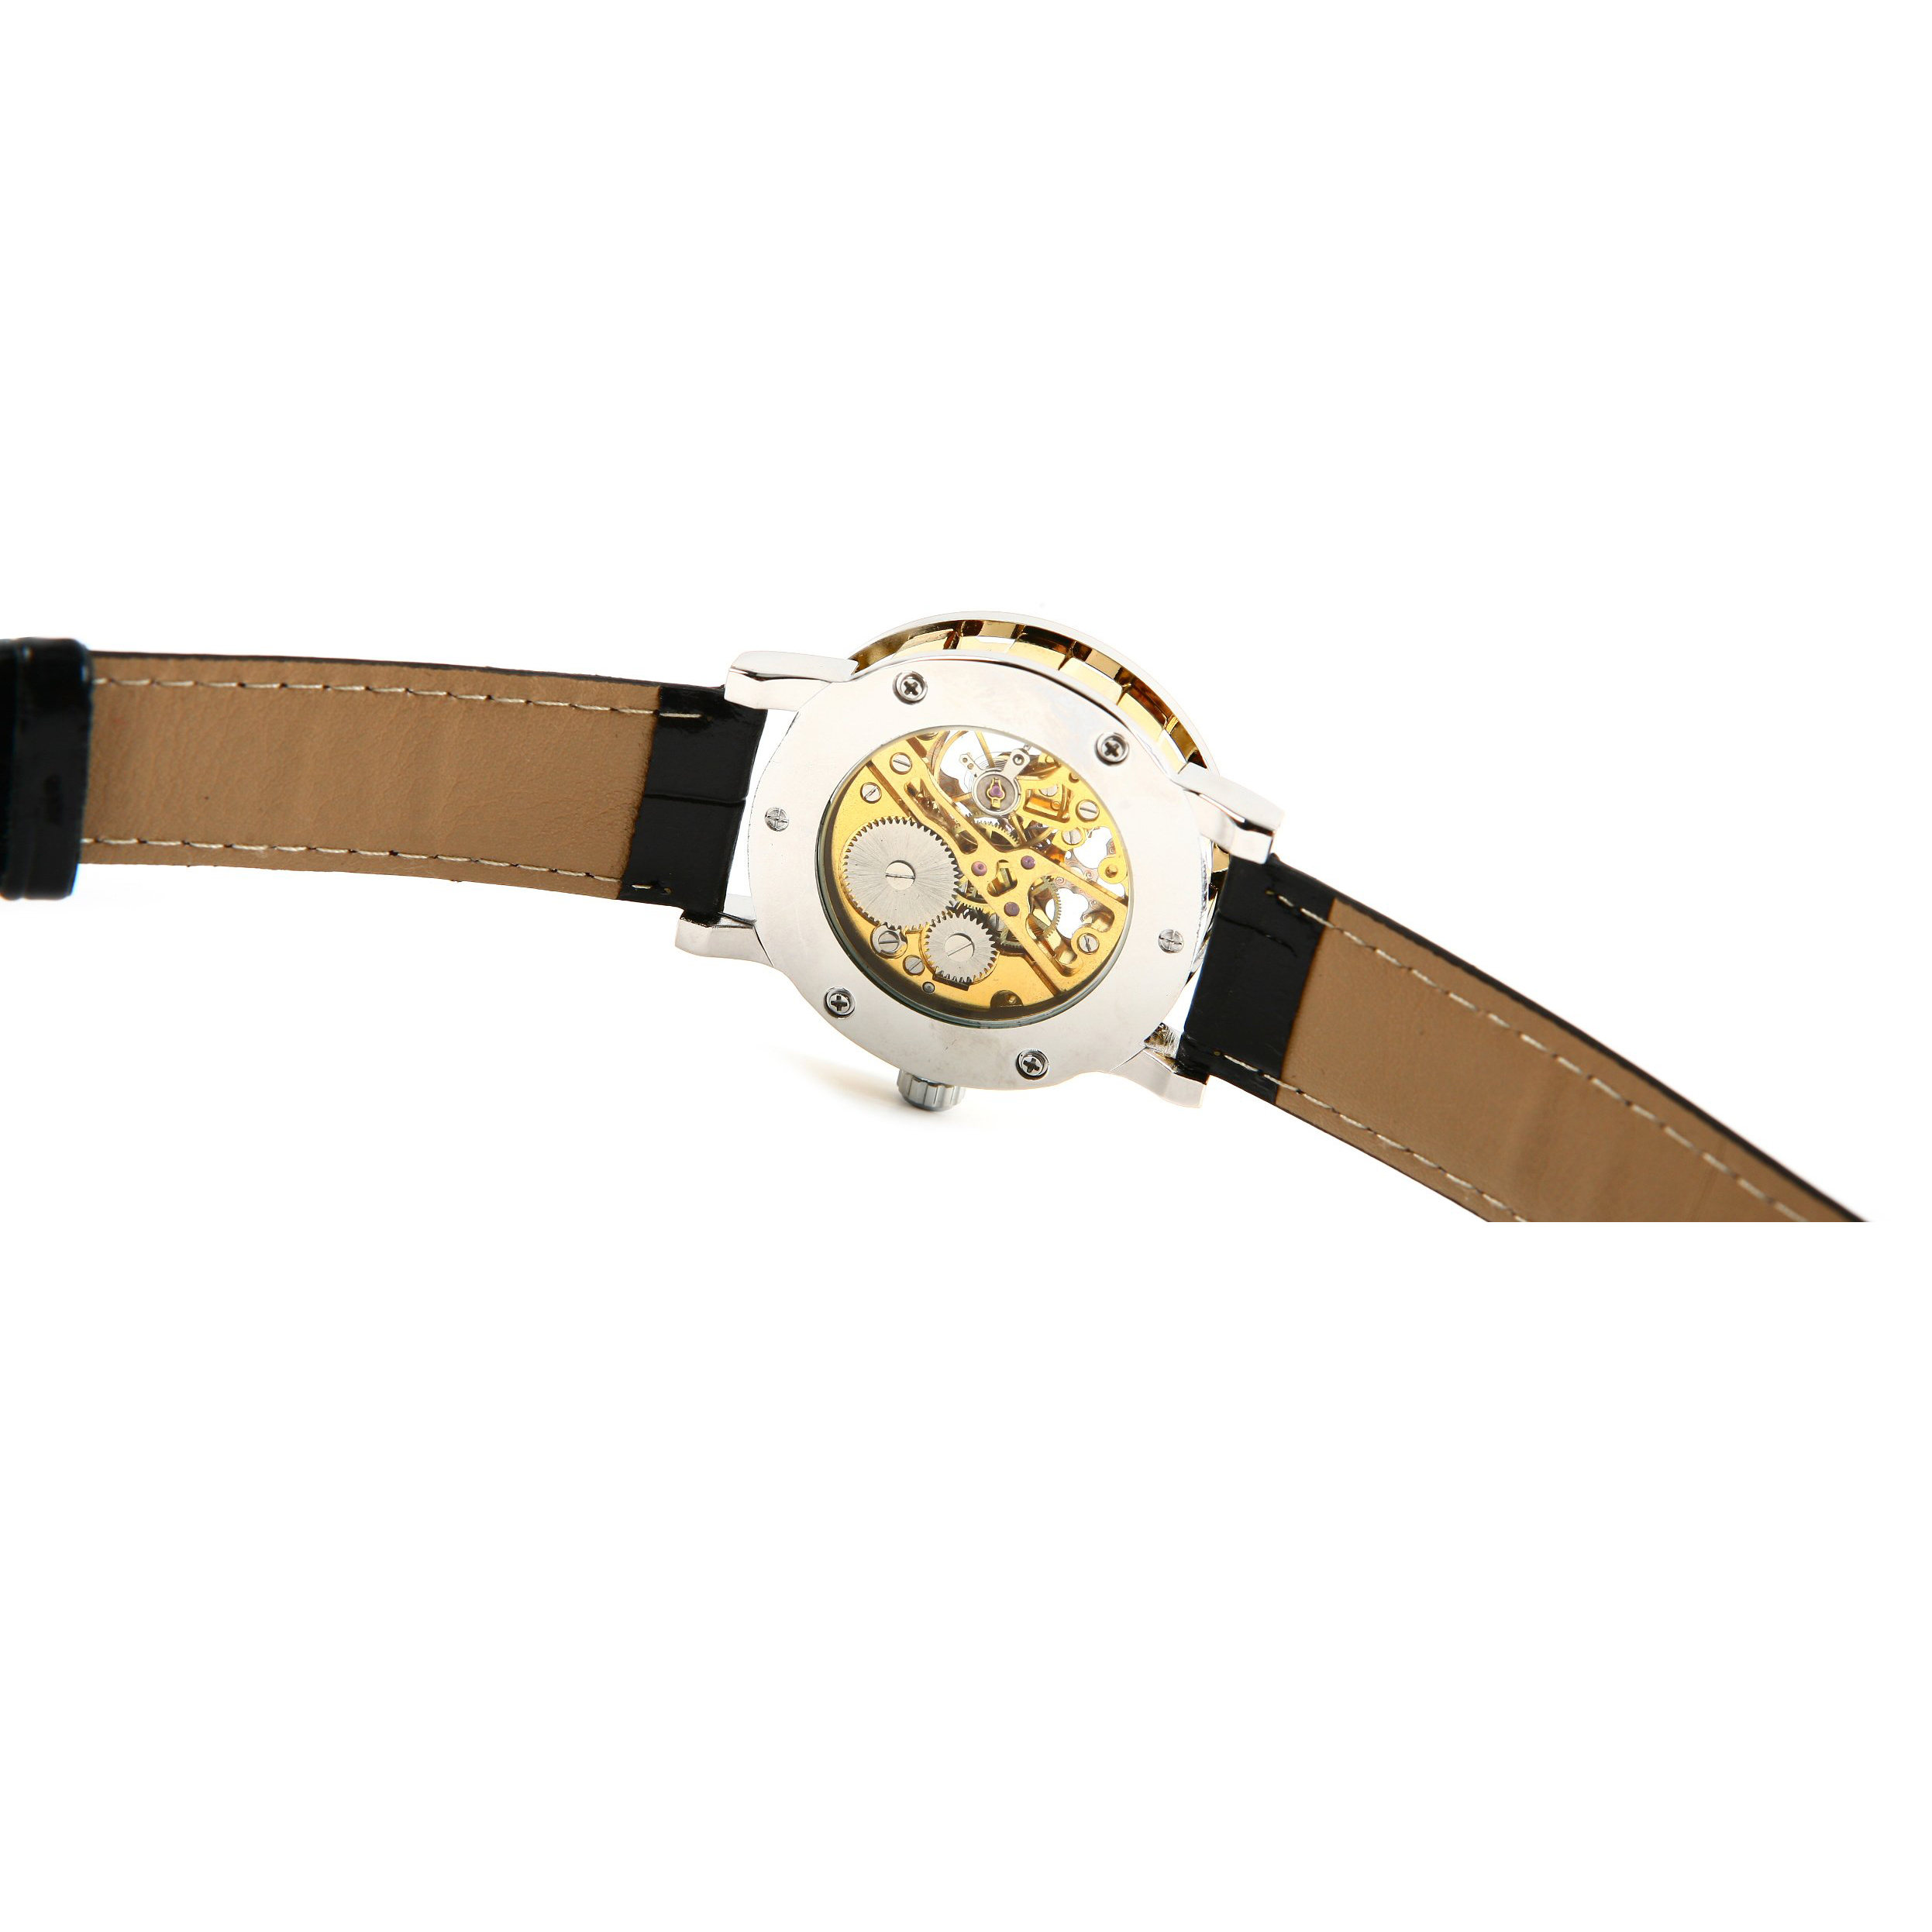 Winnaar Mens-Self-Winding Mechanische Horloge-Lederen Armband Horloge-Golden